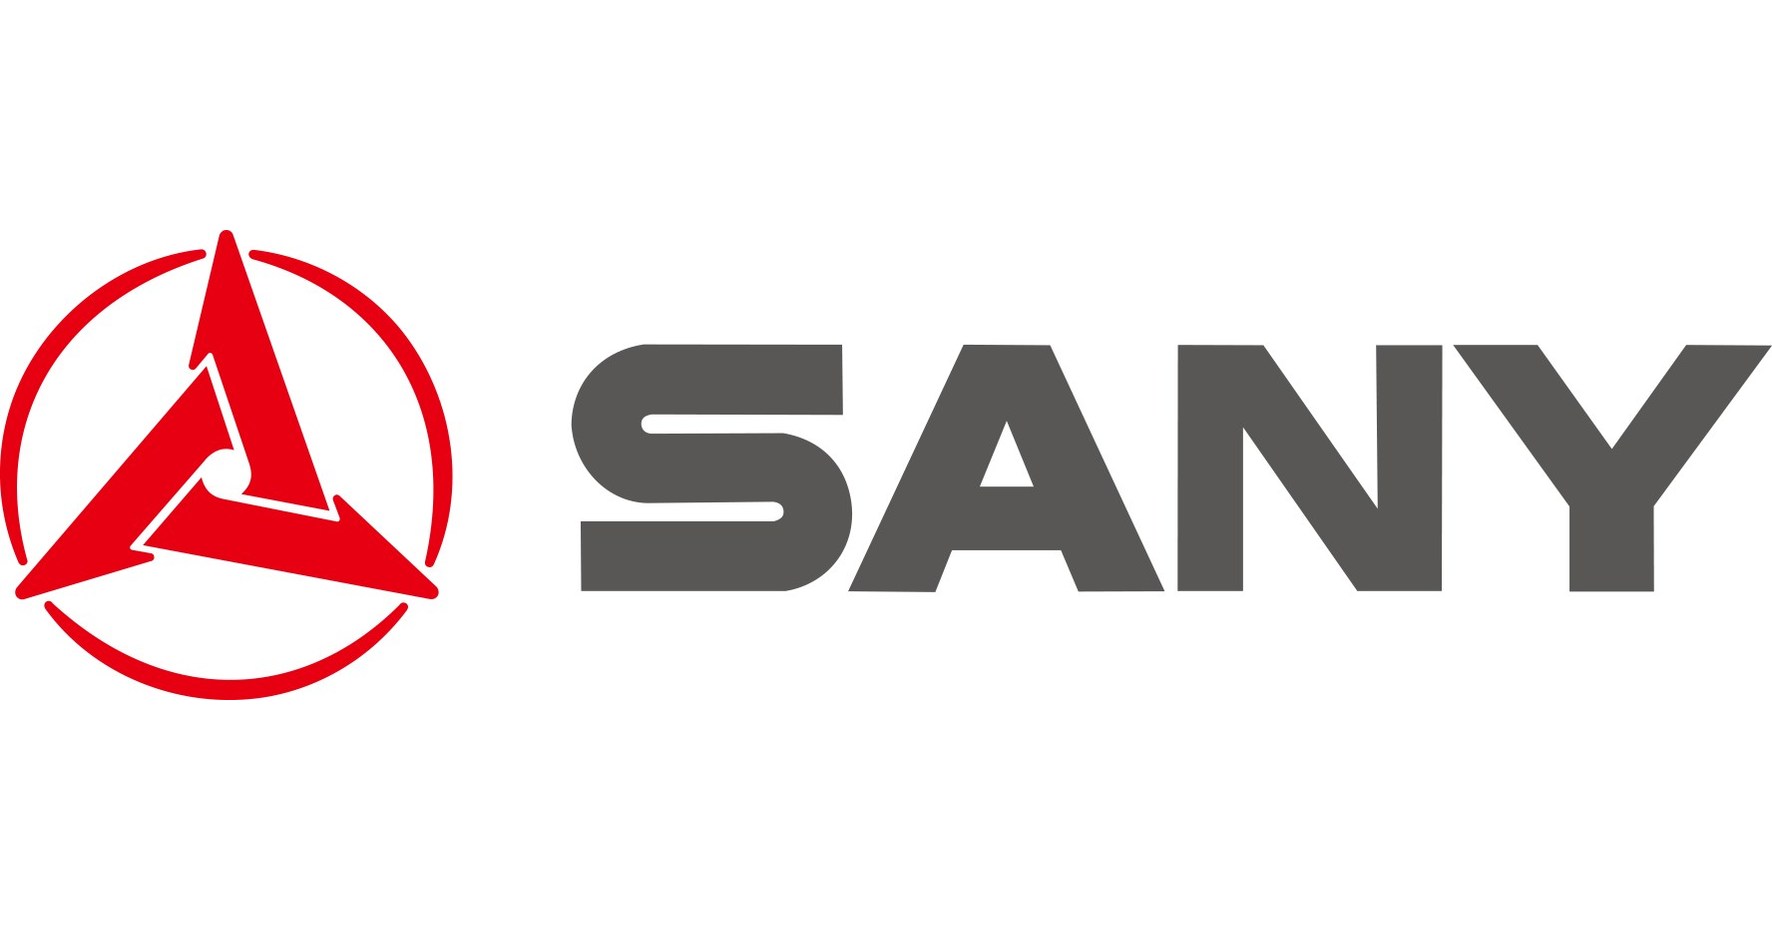 SANY nommée par Forbes comme la plus grande entreprise d'équipement lourd de Chine en 2021 et la 2e au monde